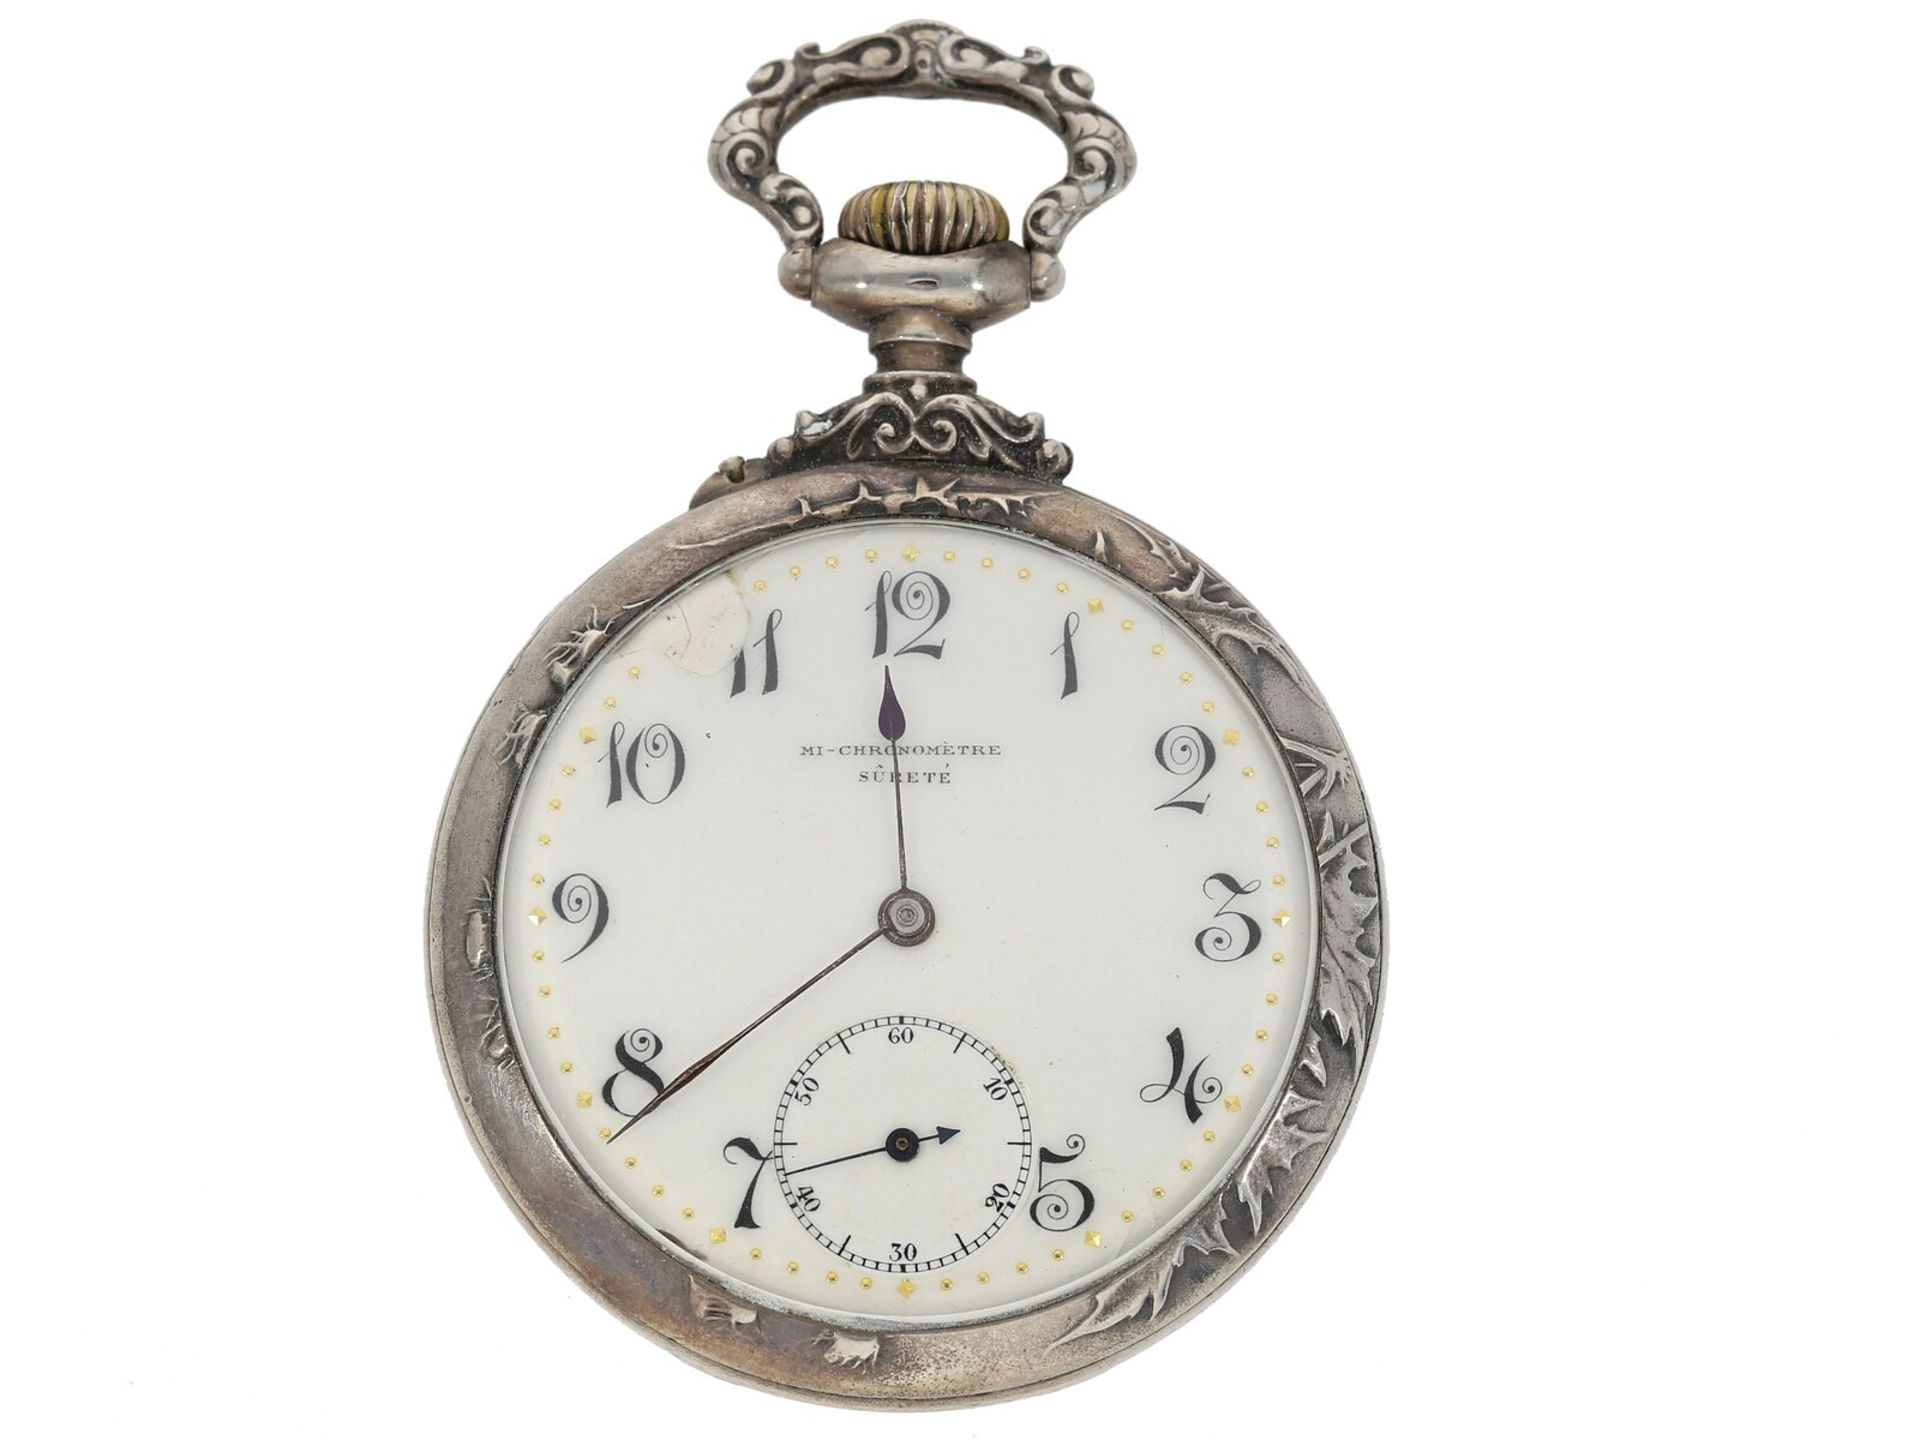 Seltenes Movado Ankerchronometer mit dekorativem Jugendstil-Reliefgehäuse, Silber, um 1900